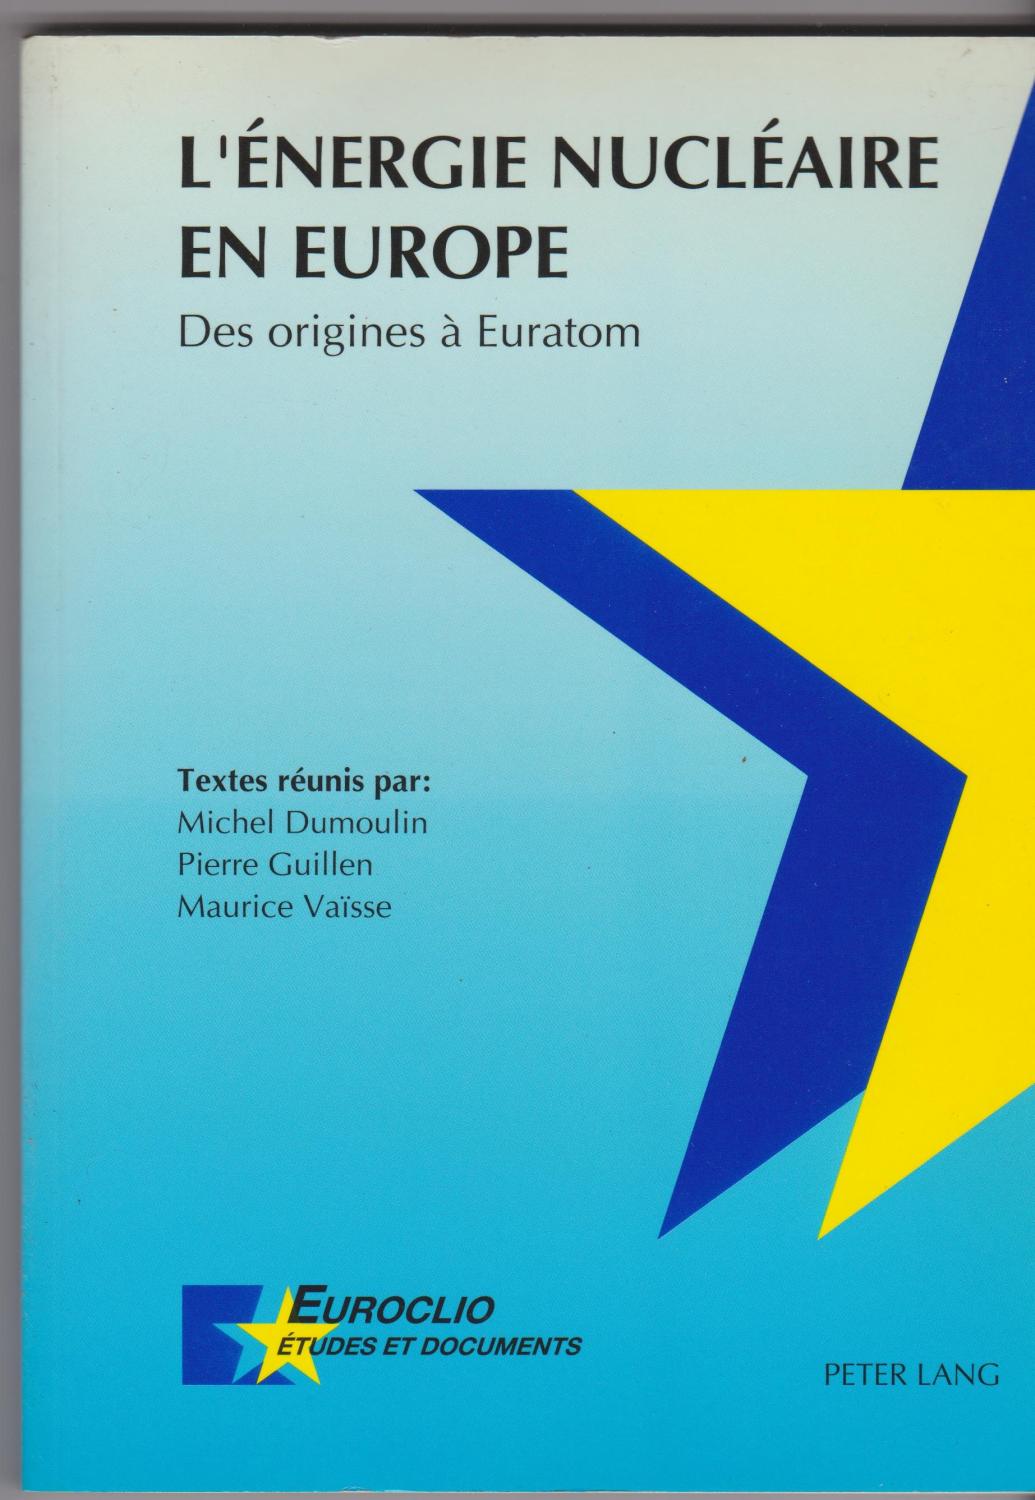 L'énergie nucléaire en Europe. Des origines à l'Euratom - Michel Dumoulin - Pierre Guillen - Maurice Vaïsse et alii